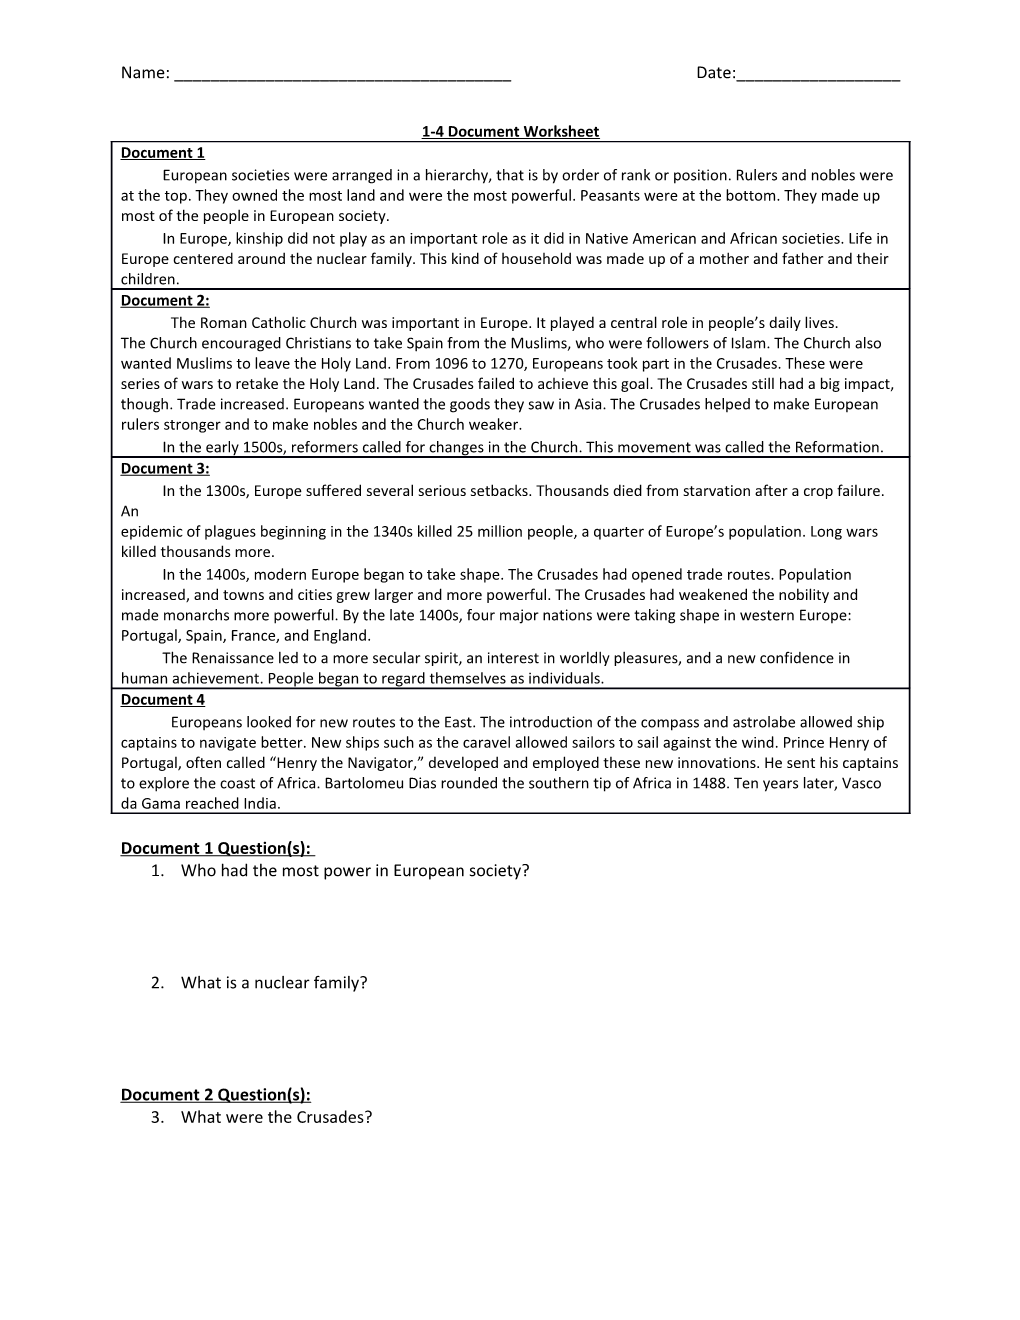 1-4 Document Worksheet